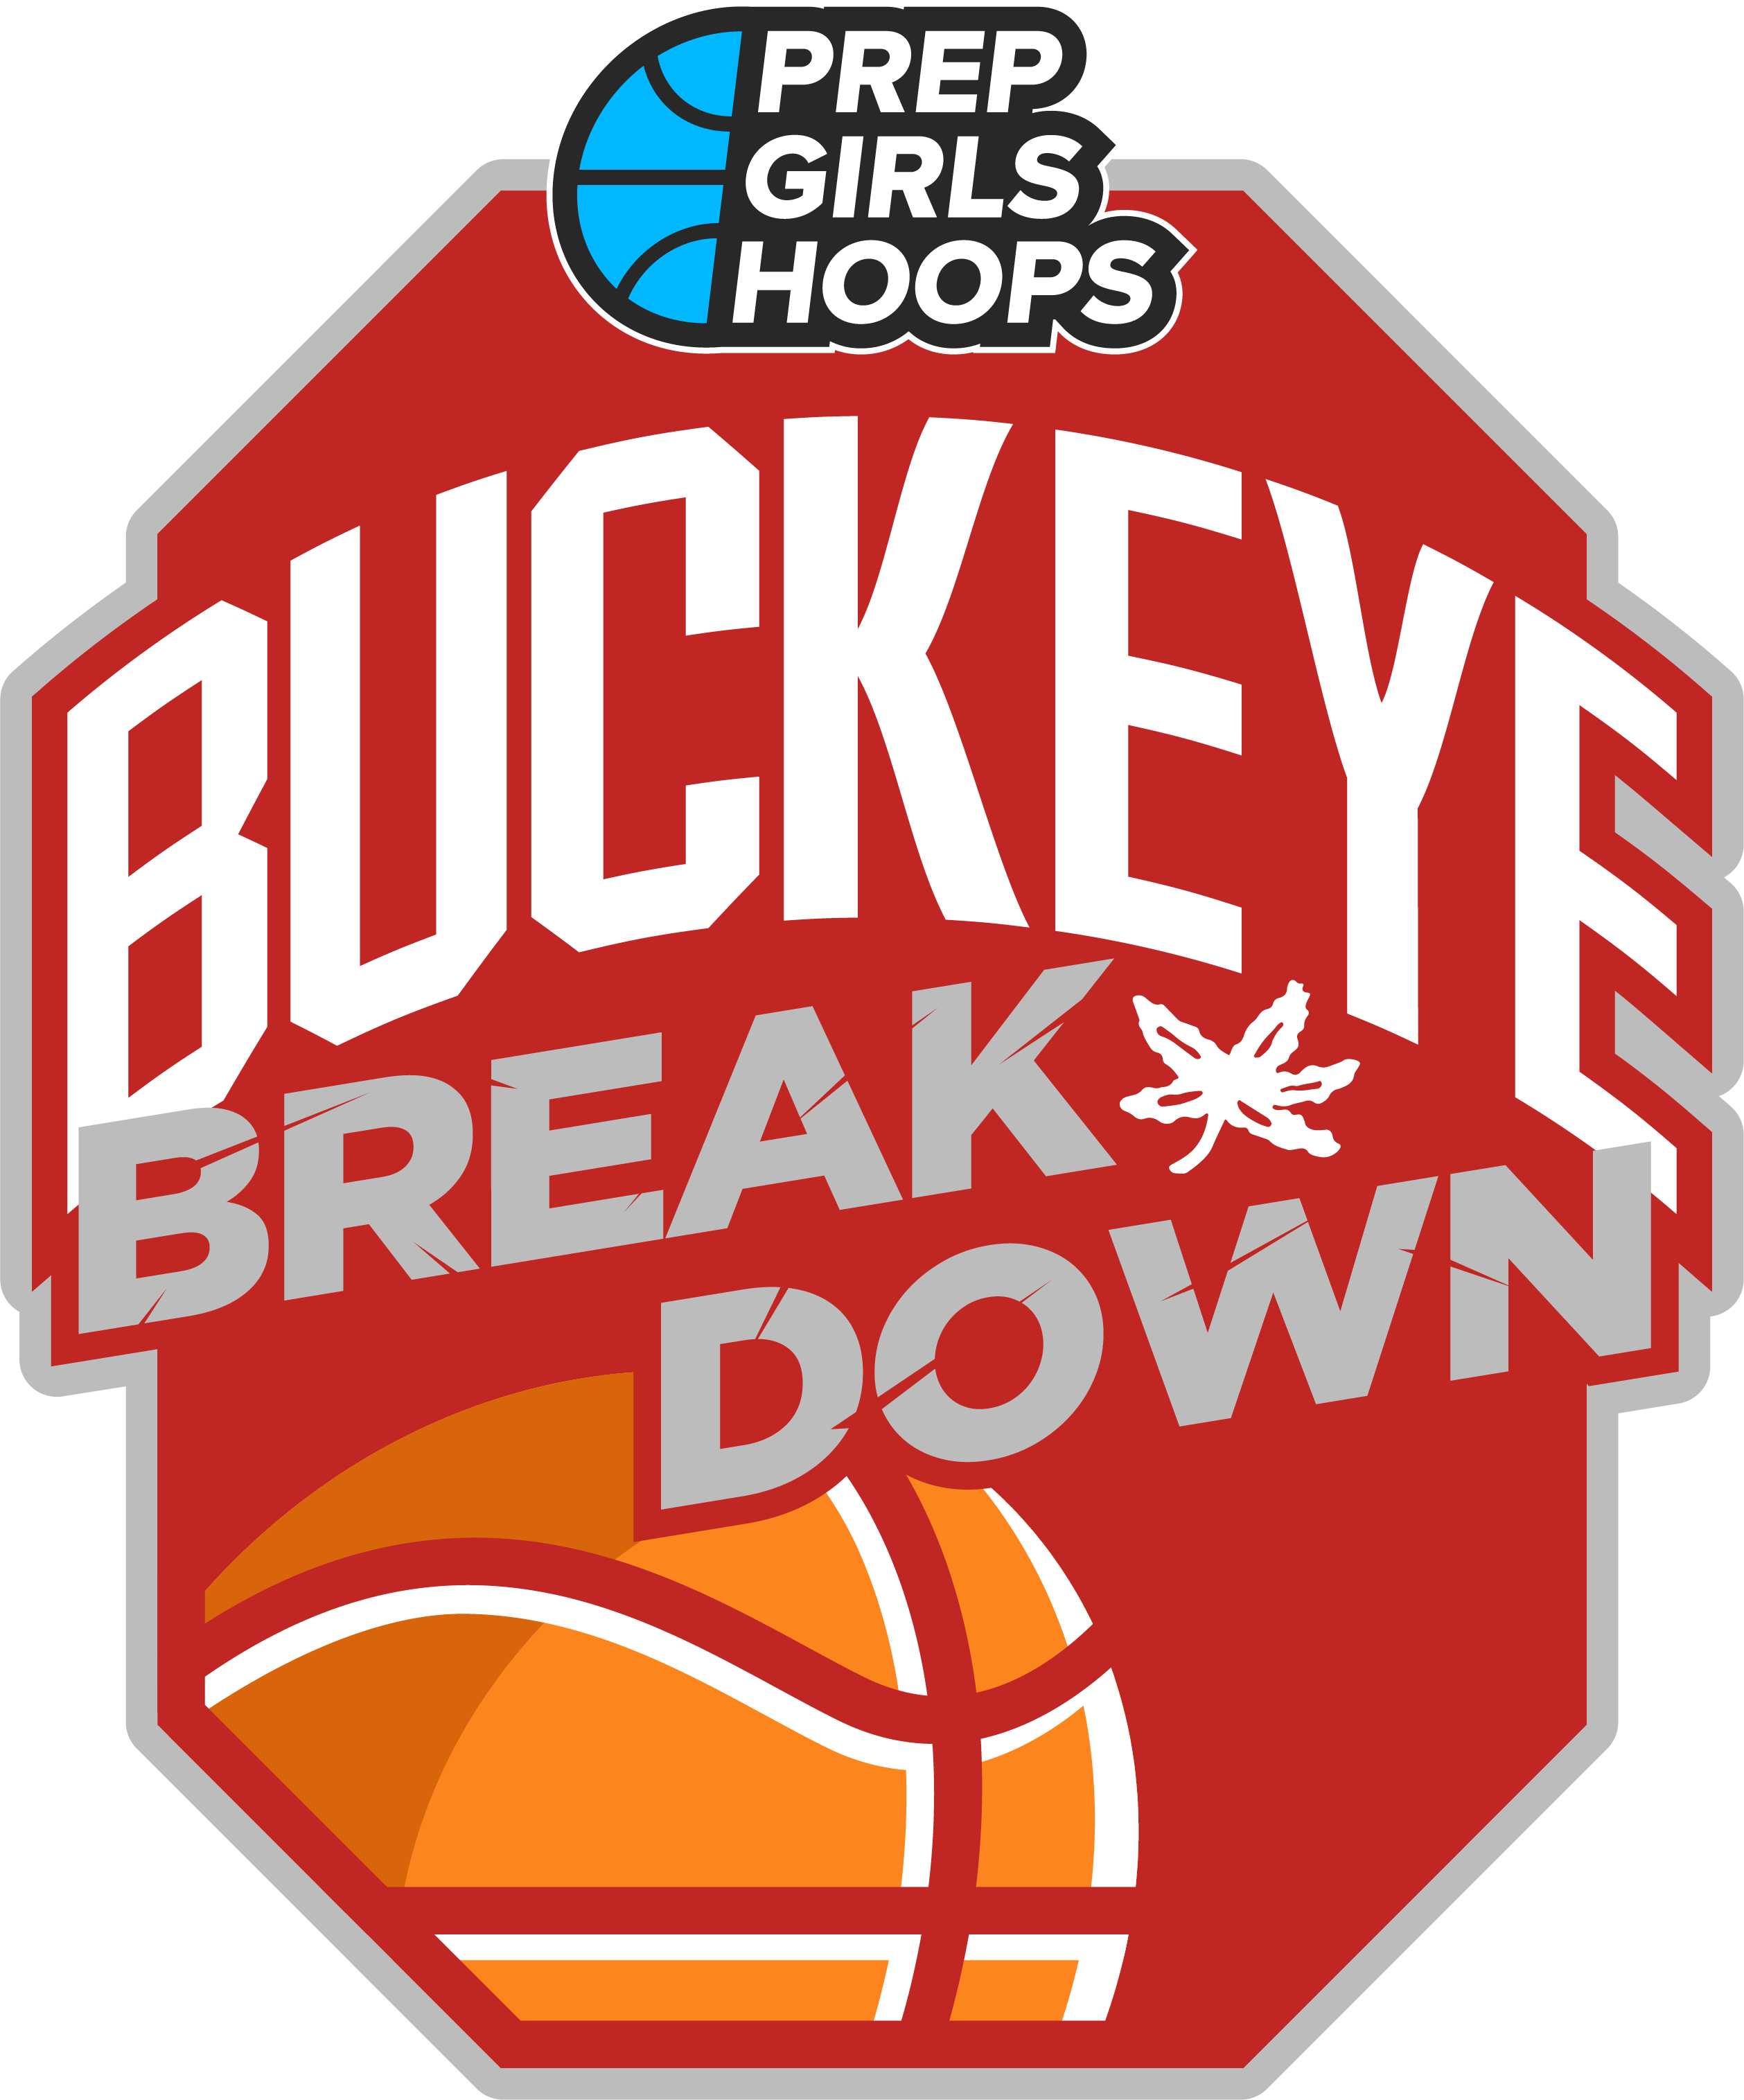 Buckeye Breakdown